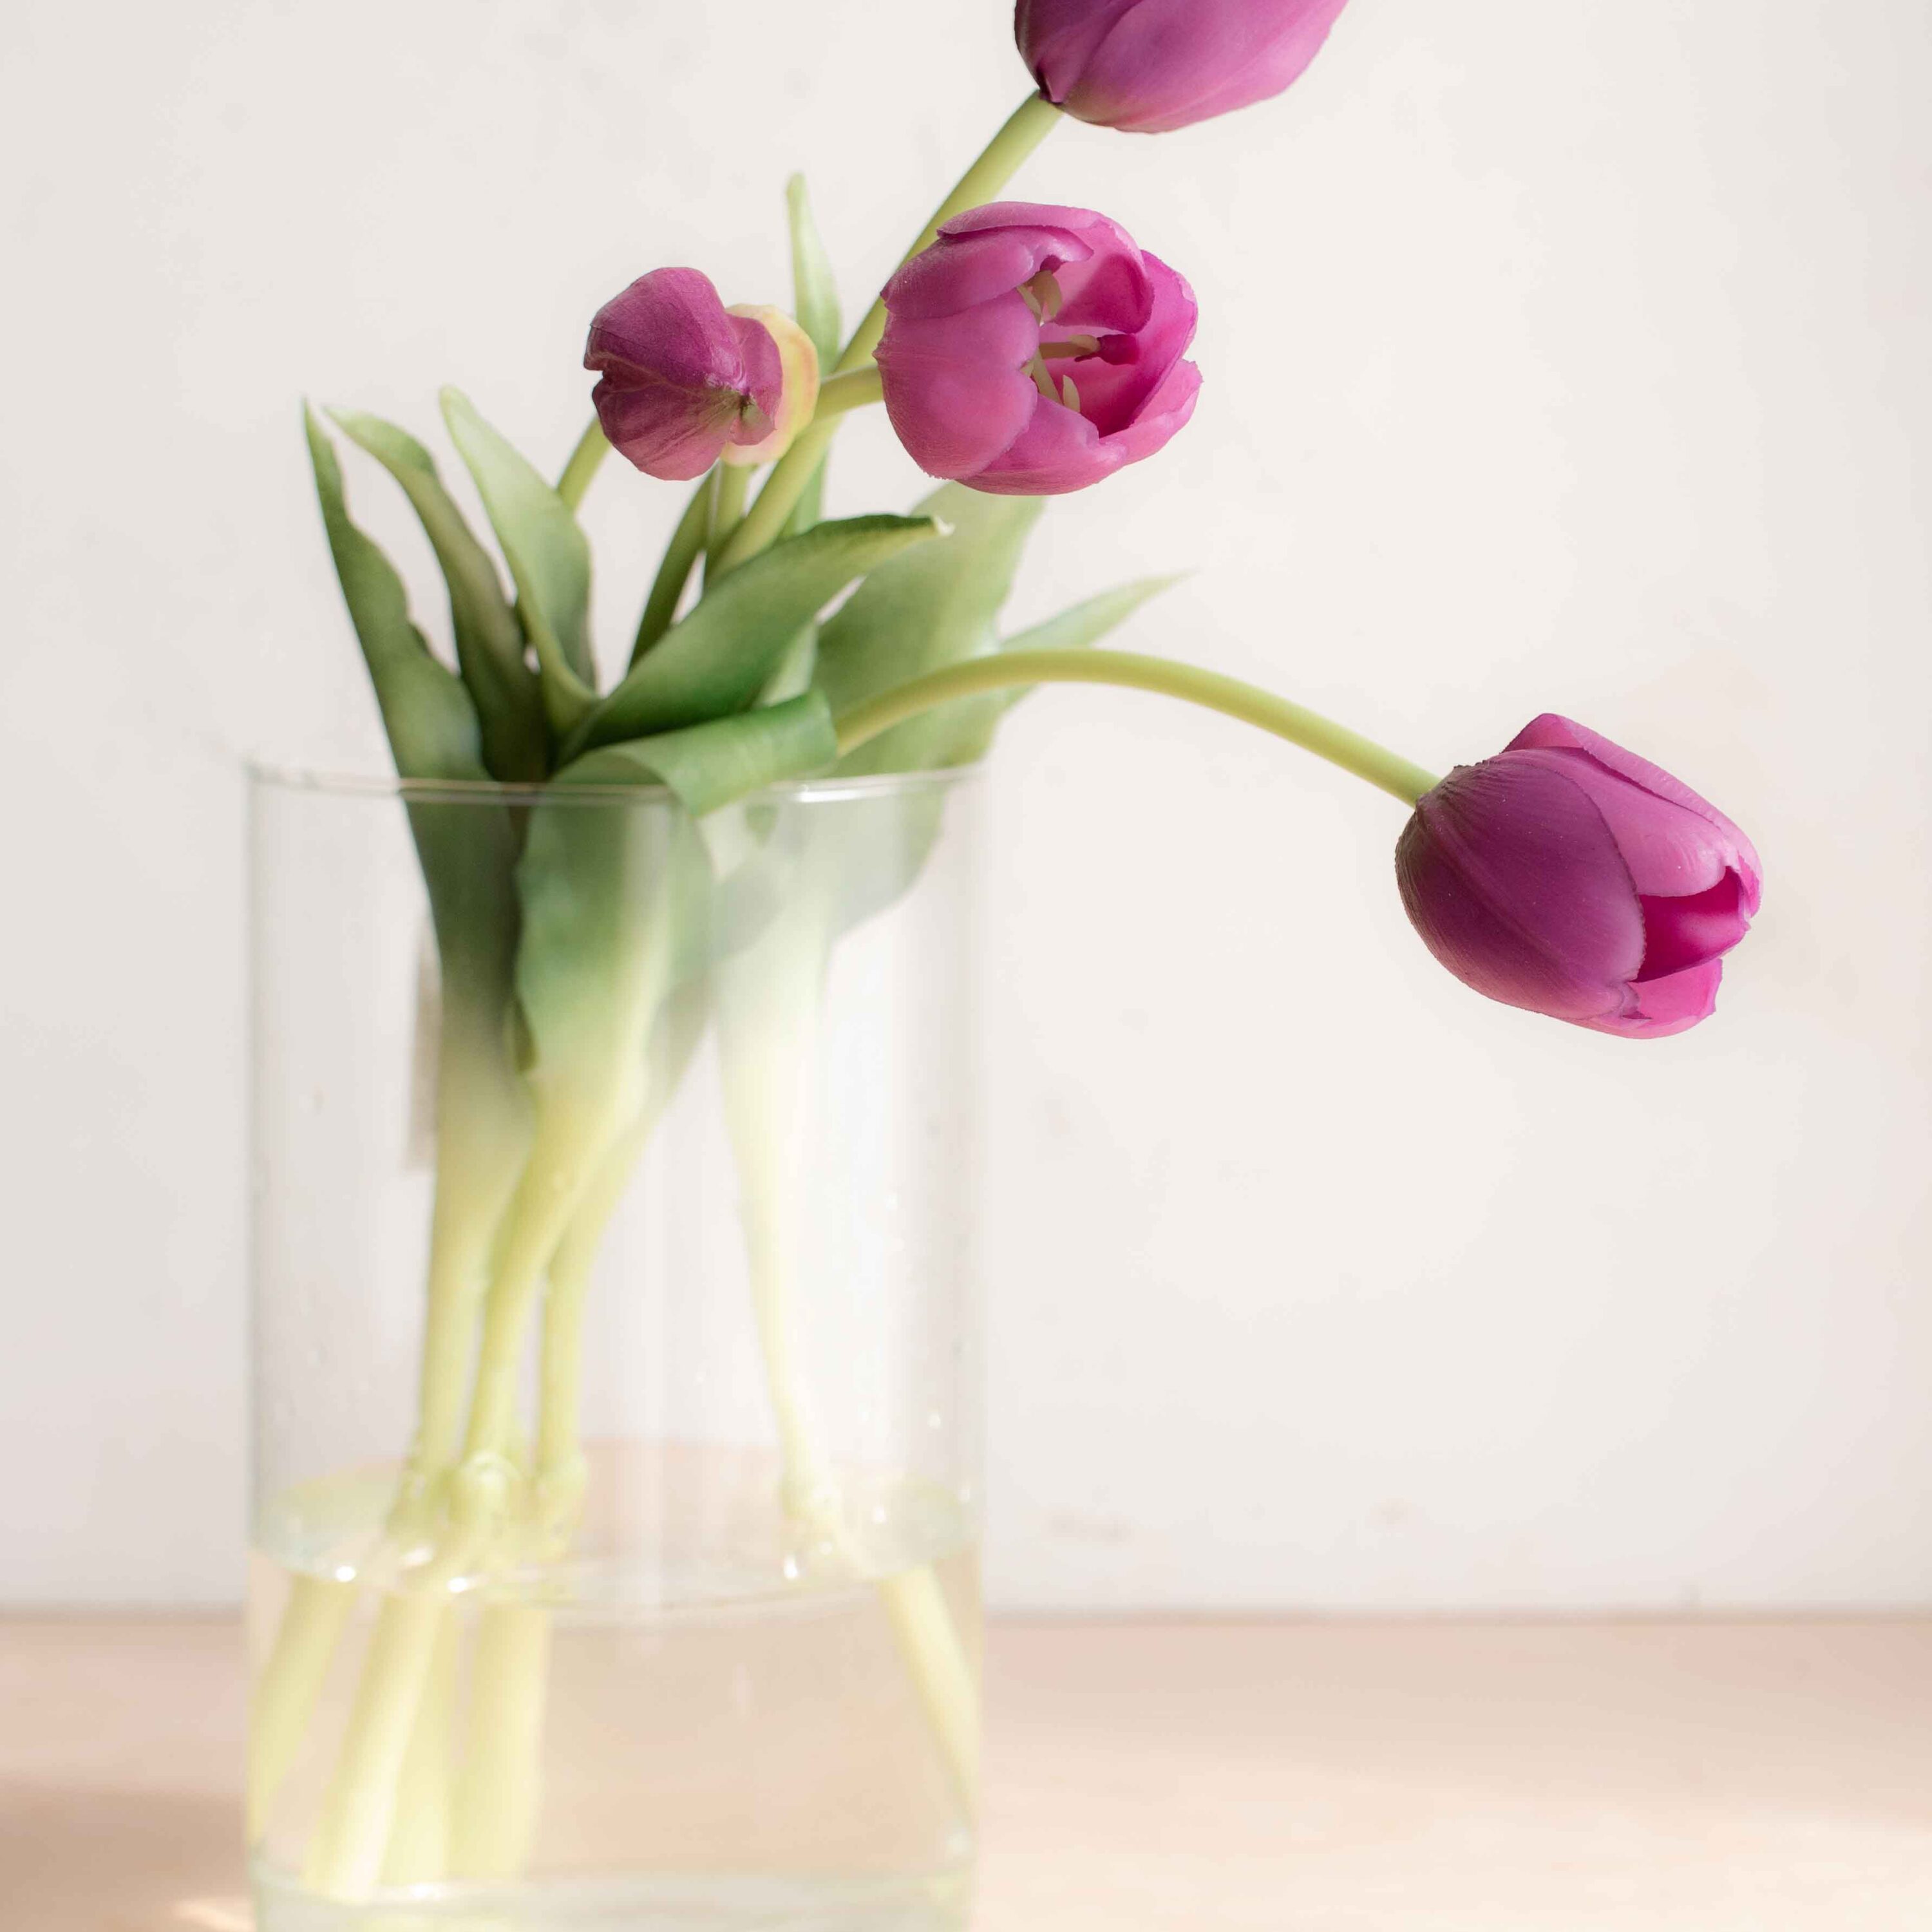 bellissimi tulipani real touch, estremamente realistici colore lilla